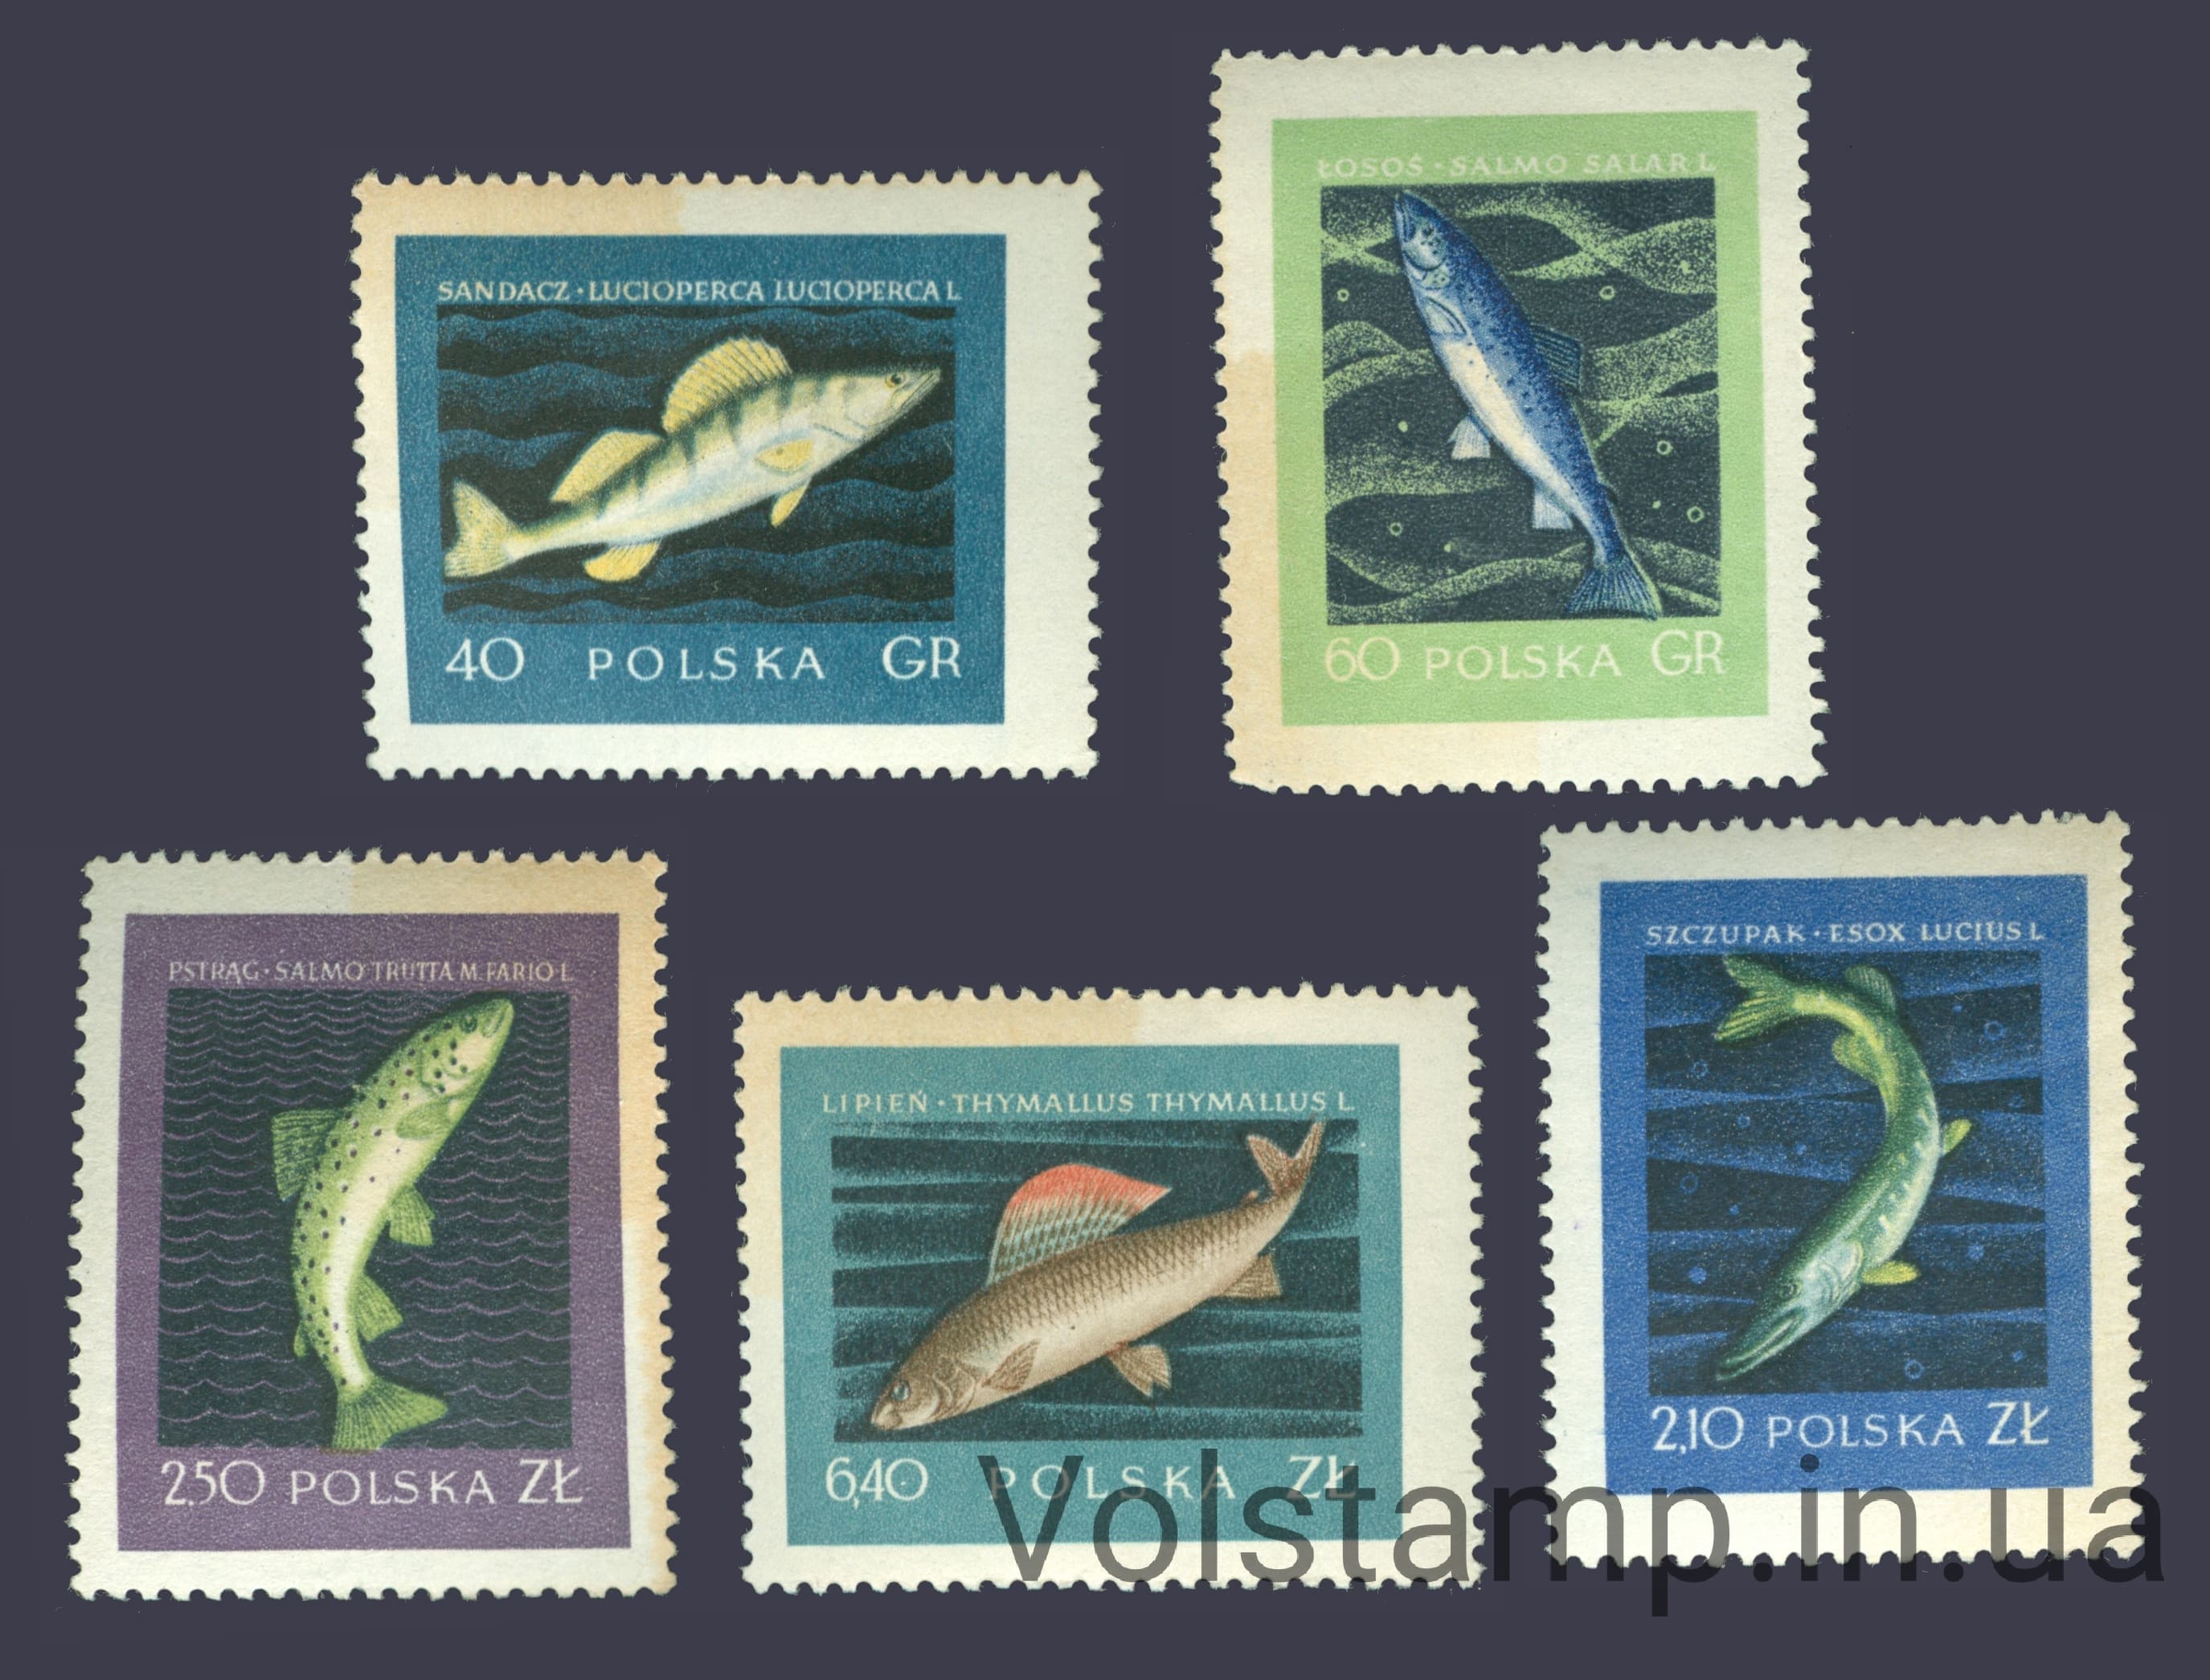 1958 Польша Серия марок (Рыбы) MNH пожелтевшая бумага №1051-1055